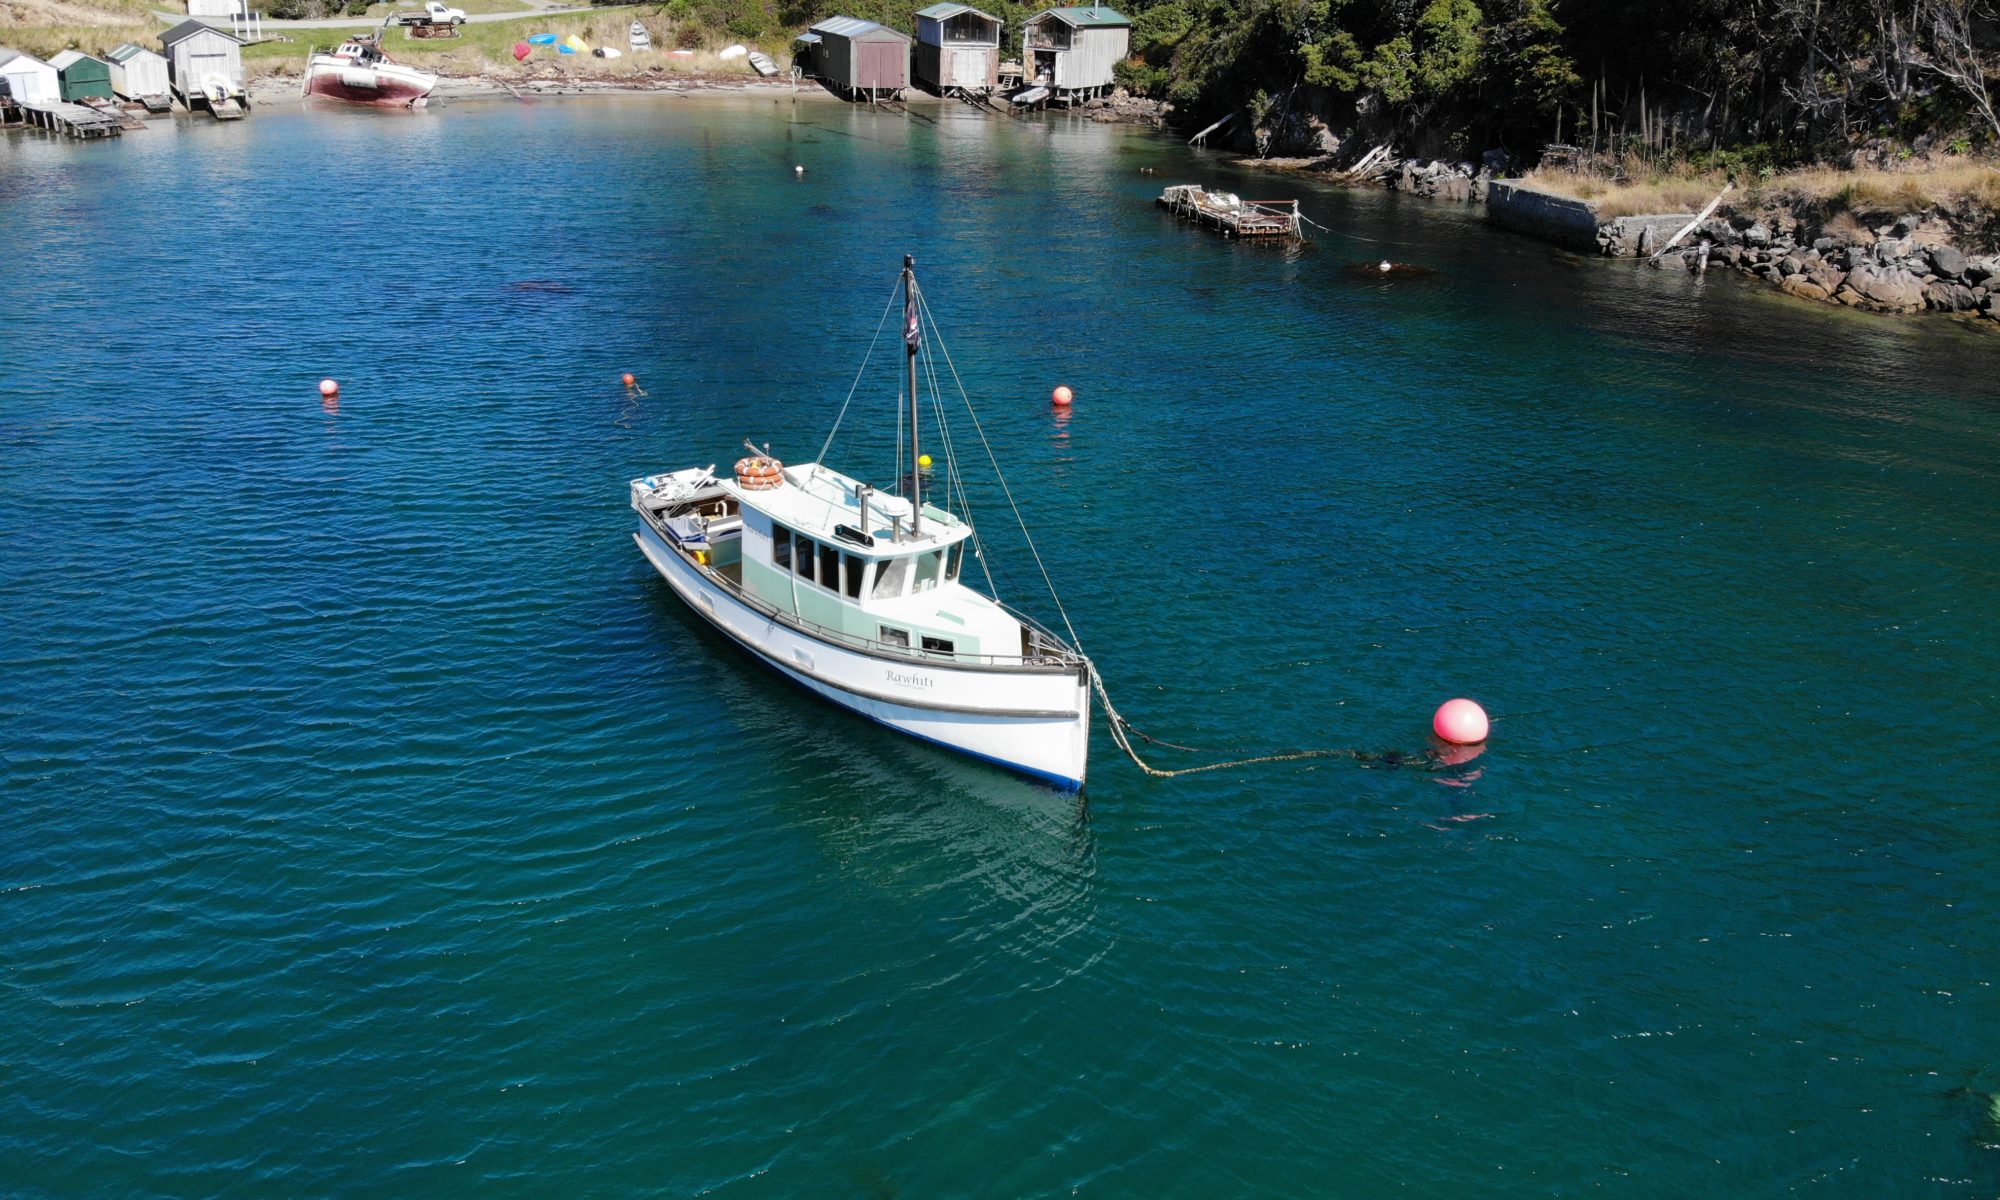 Rawhiti - Stewart Island Fishing Charters Vessel